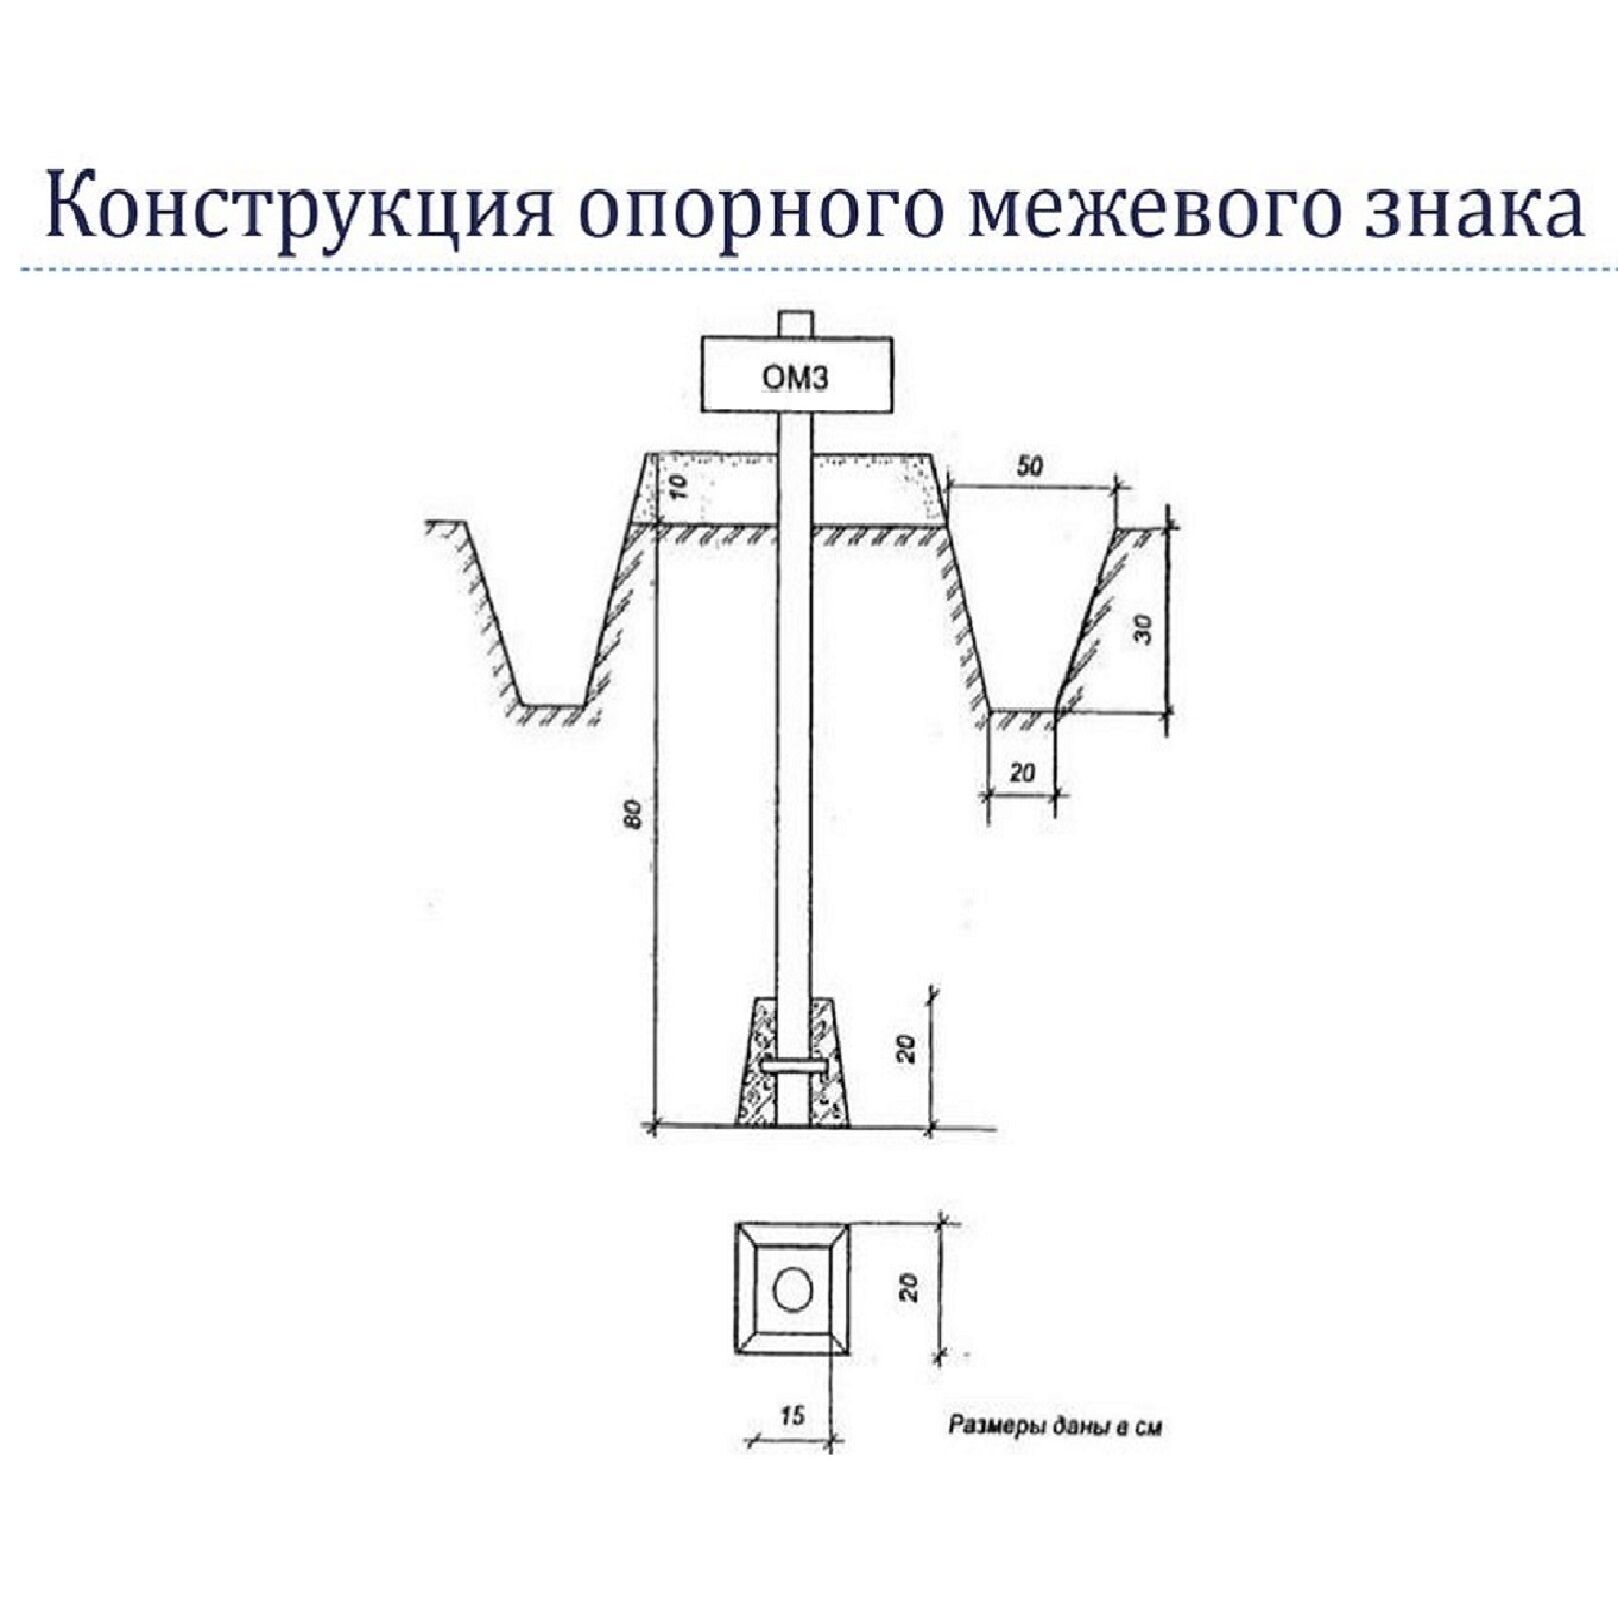 Опорный межевой знак (ОМЗ) для геодезии ГОСТ 21668-85